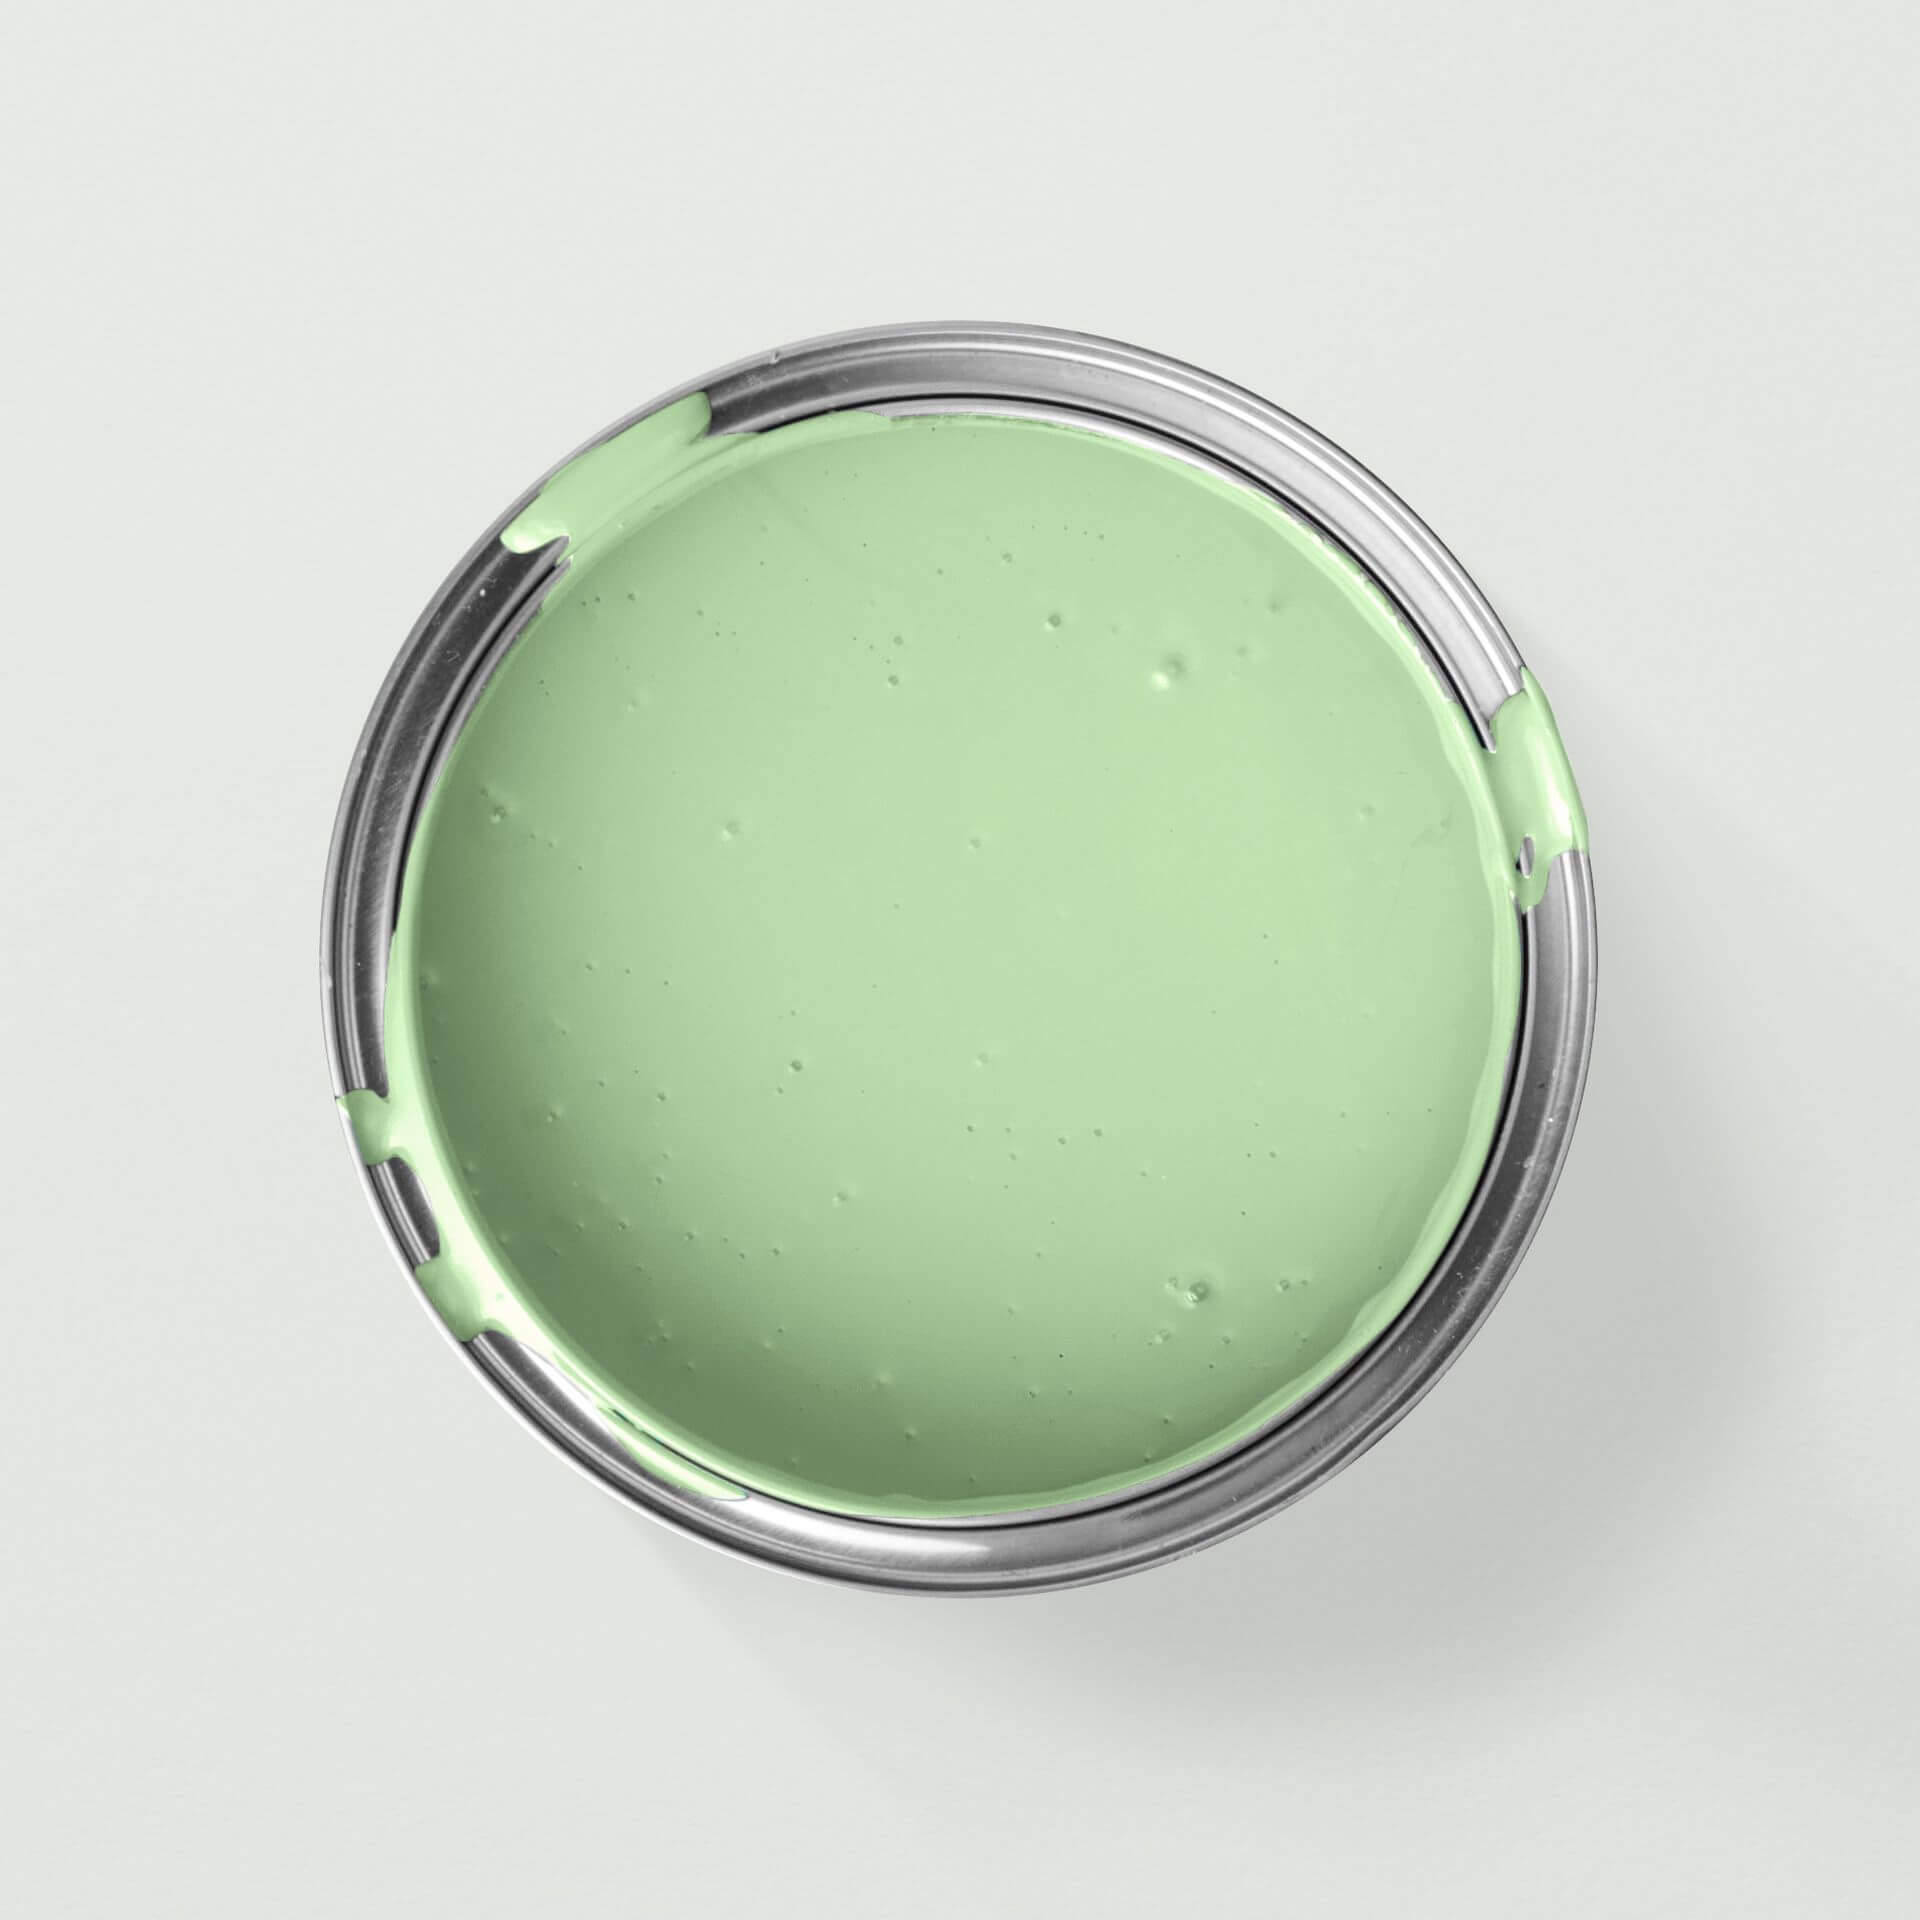 MissPompadour Grün mit Limette - Die Wertvolle 2.5L